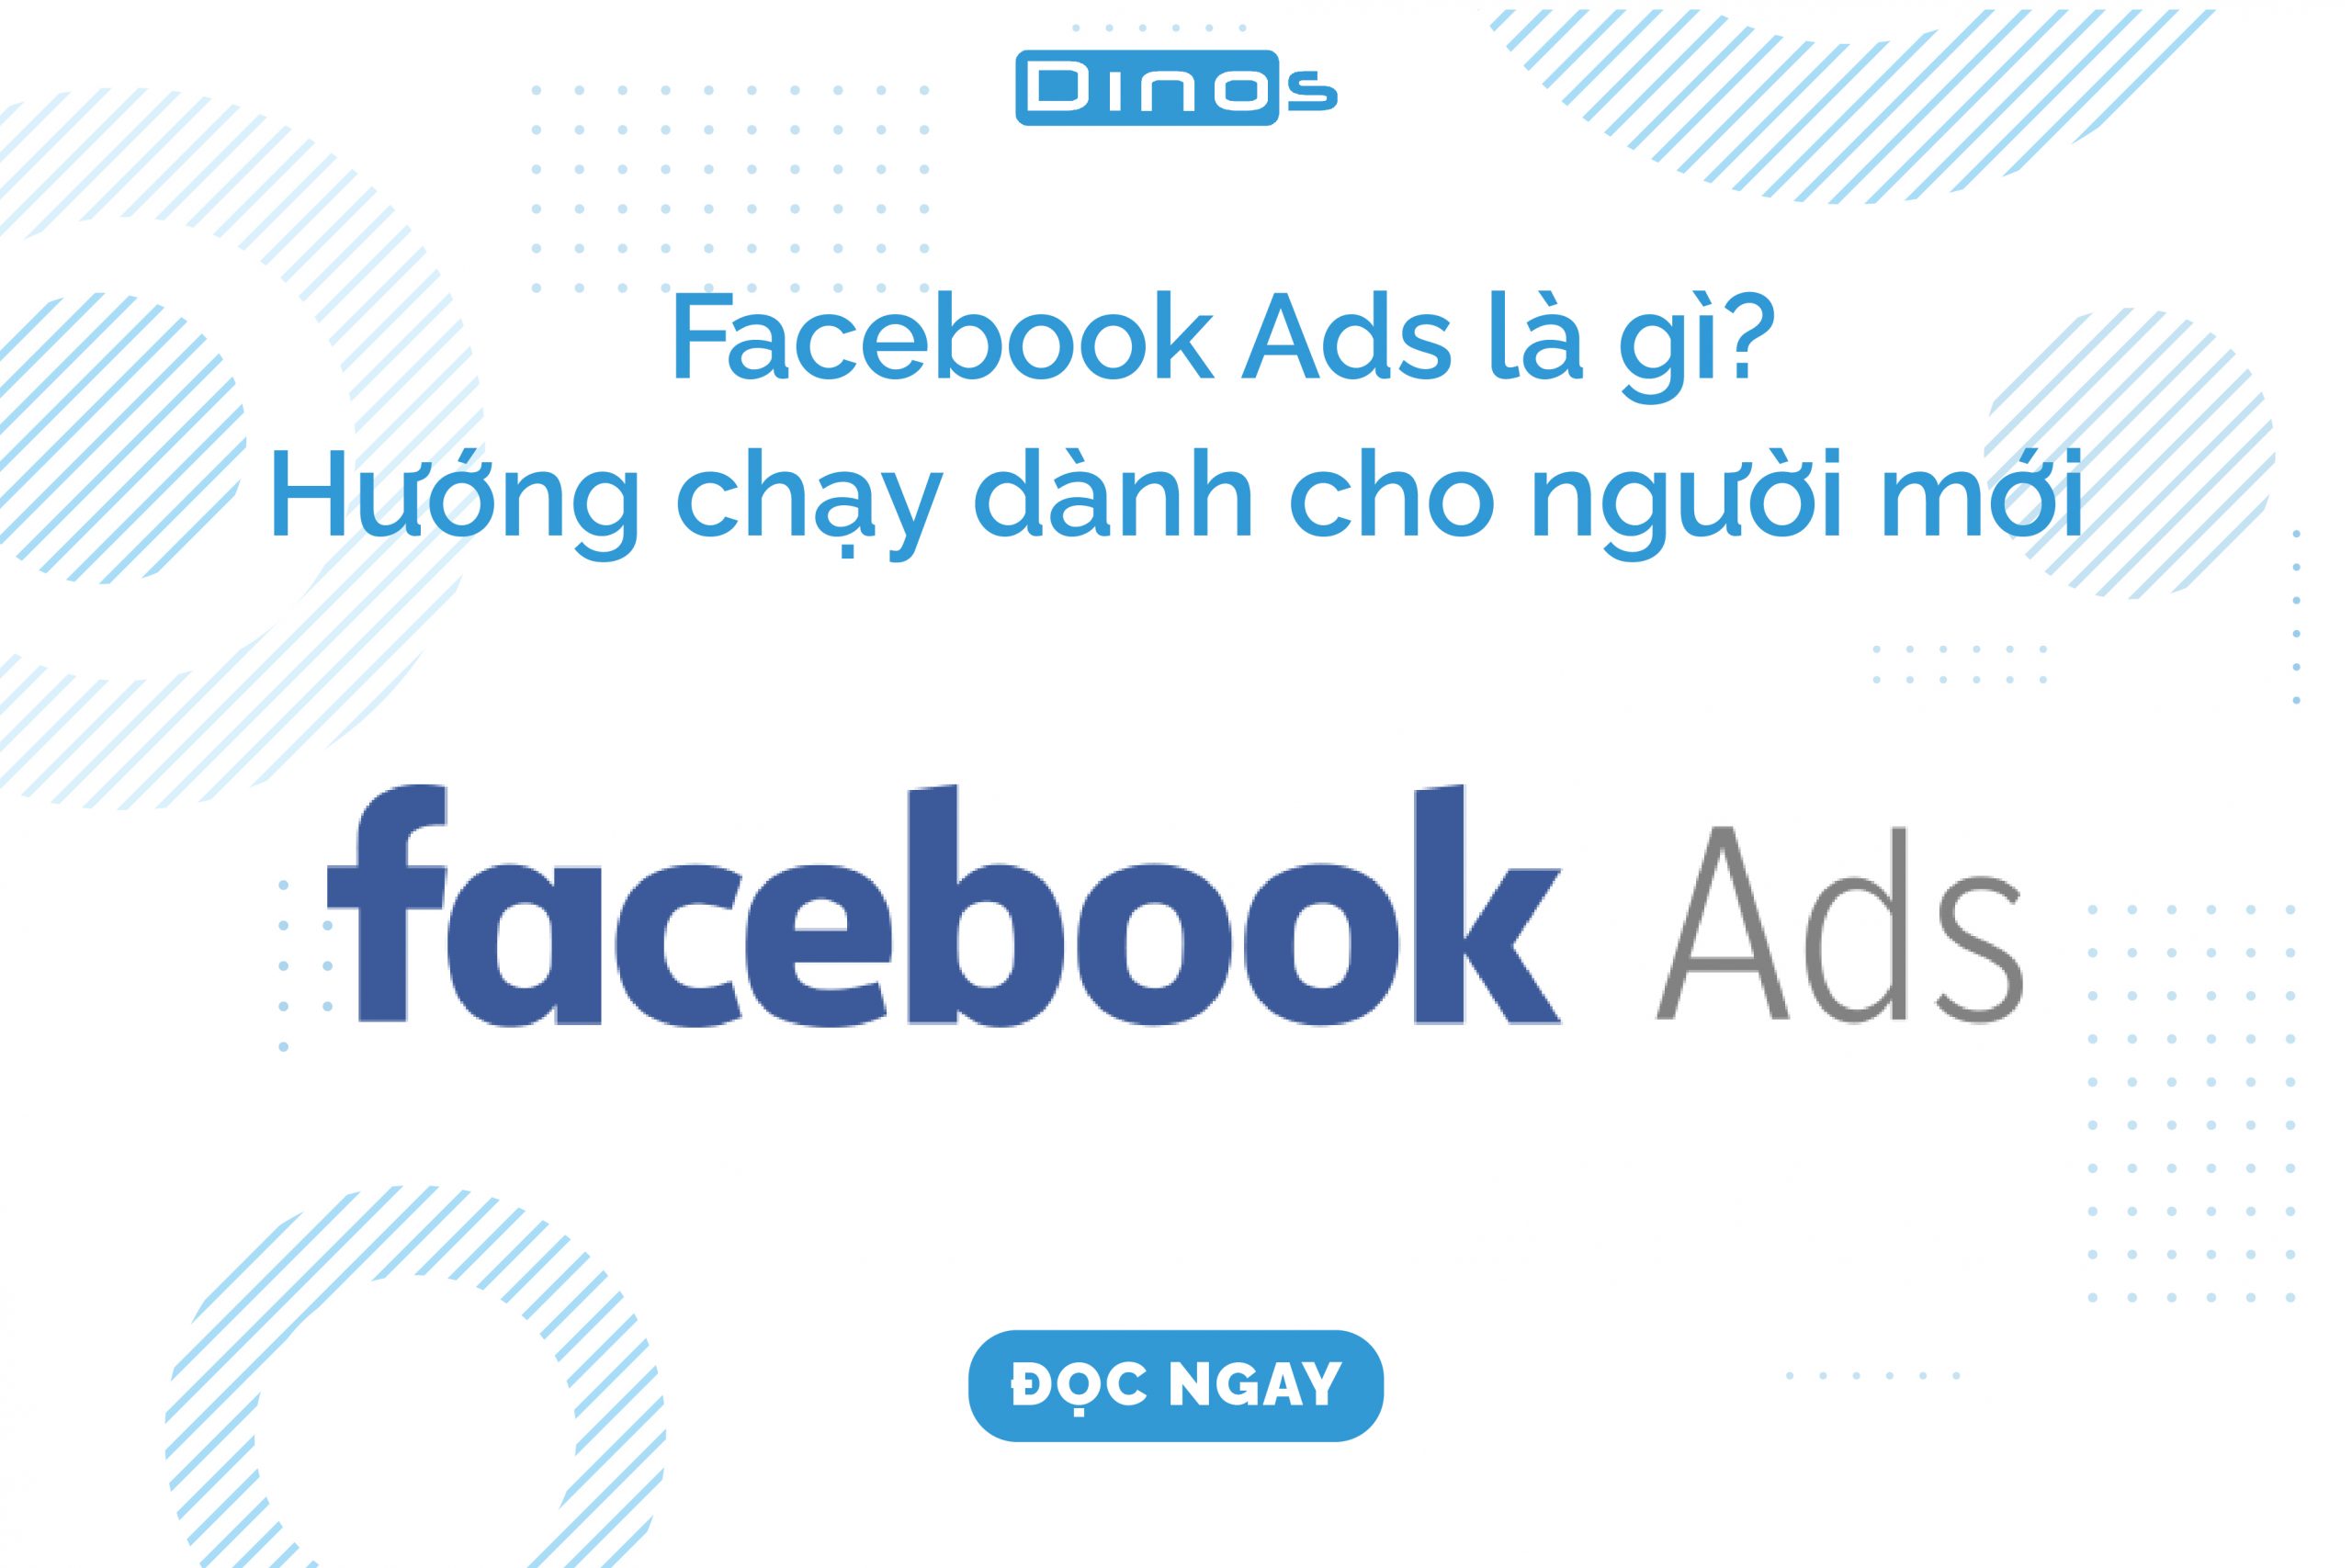 Facebook Ads là gì? Giới thiệu cơ bản về Facebook Ads